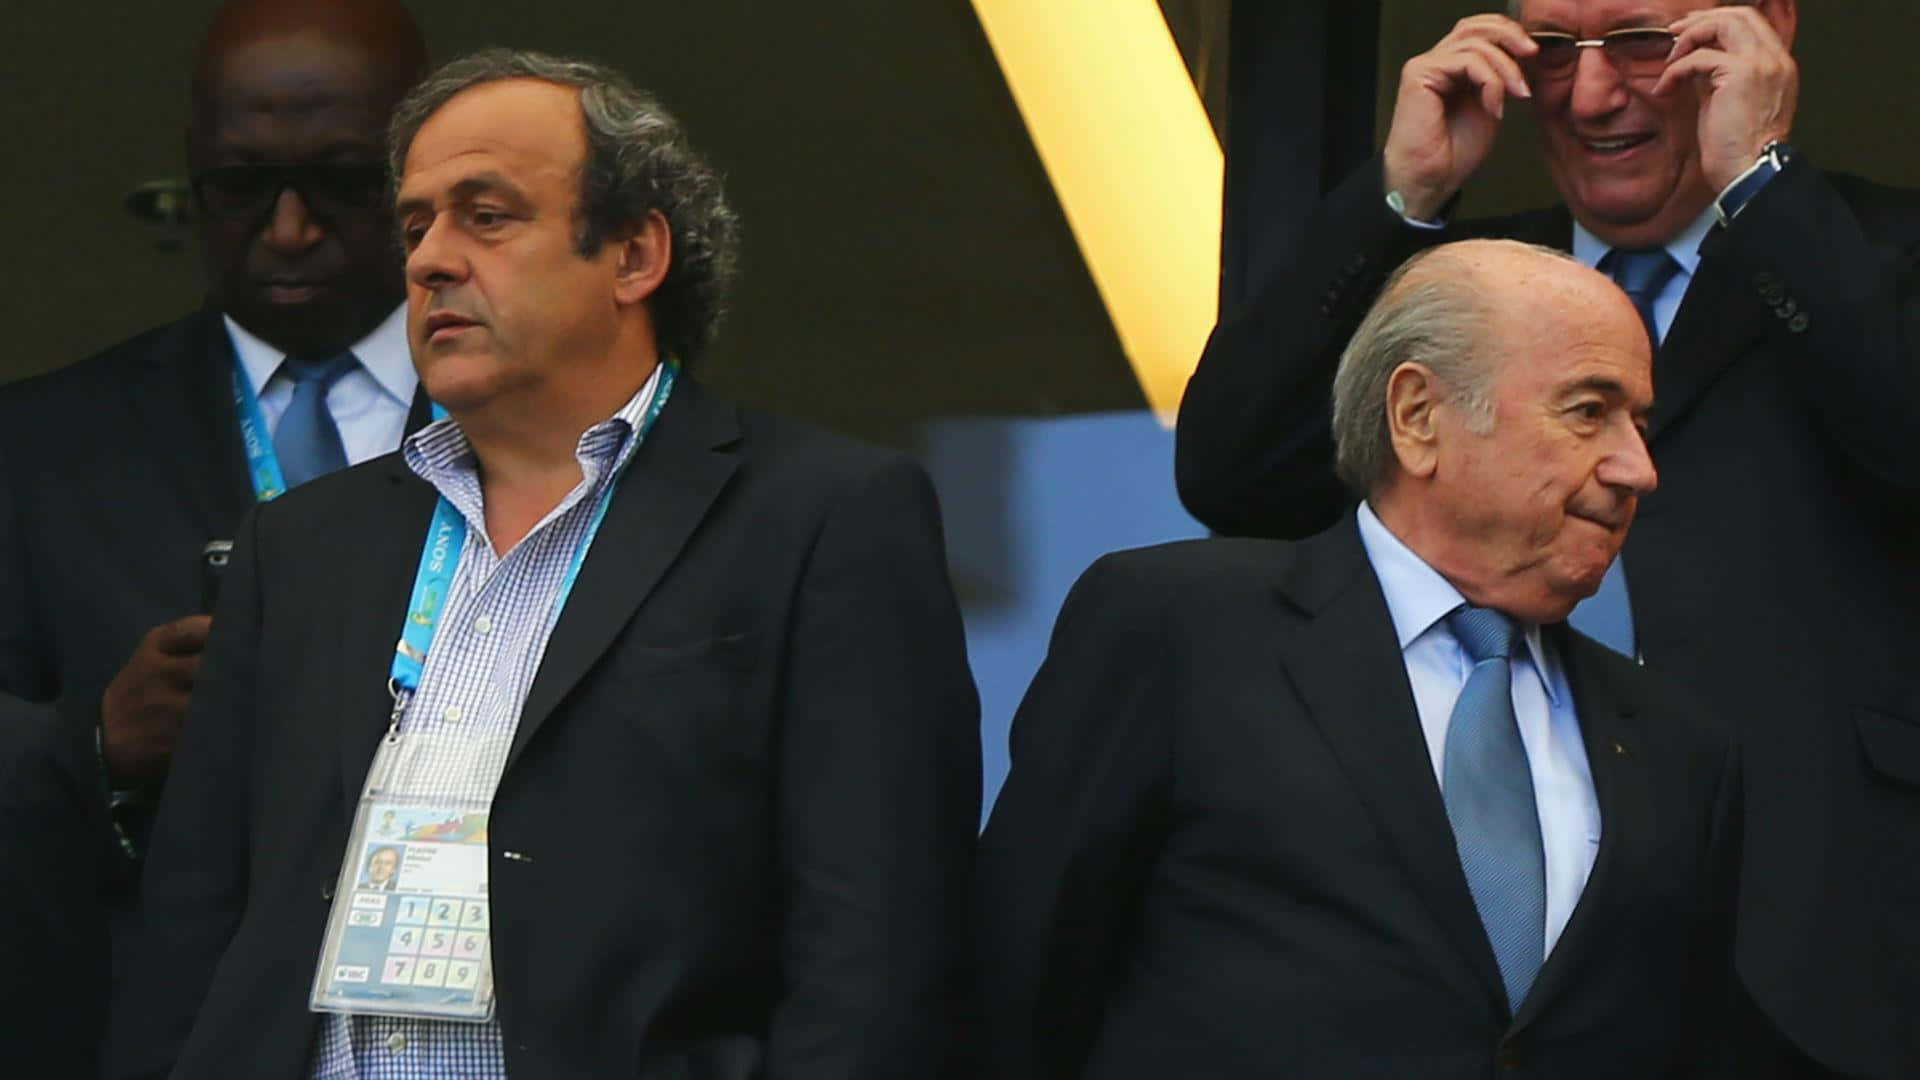 Michelplatini E Sepp Blatter São Temas Populares De Fotografia No Fórum. Papel de Parede